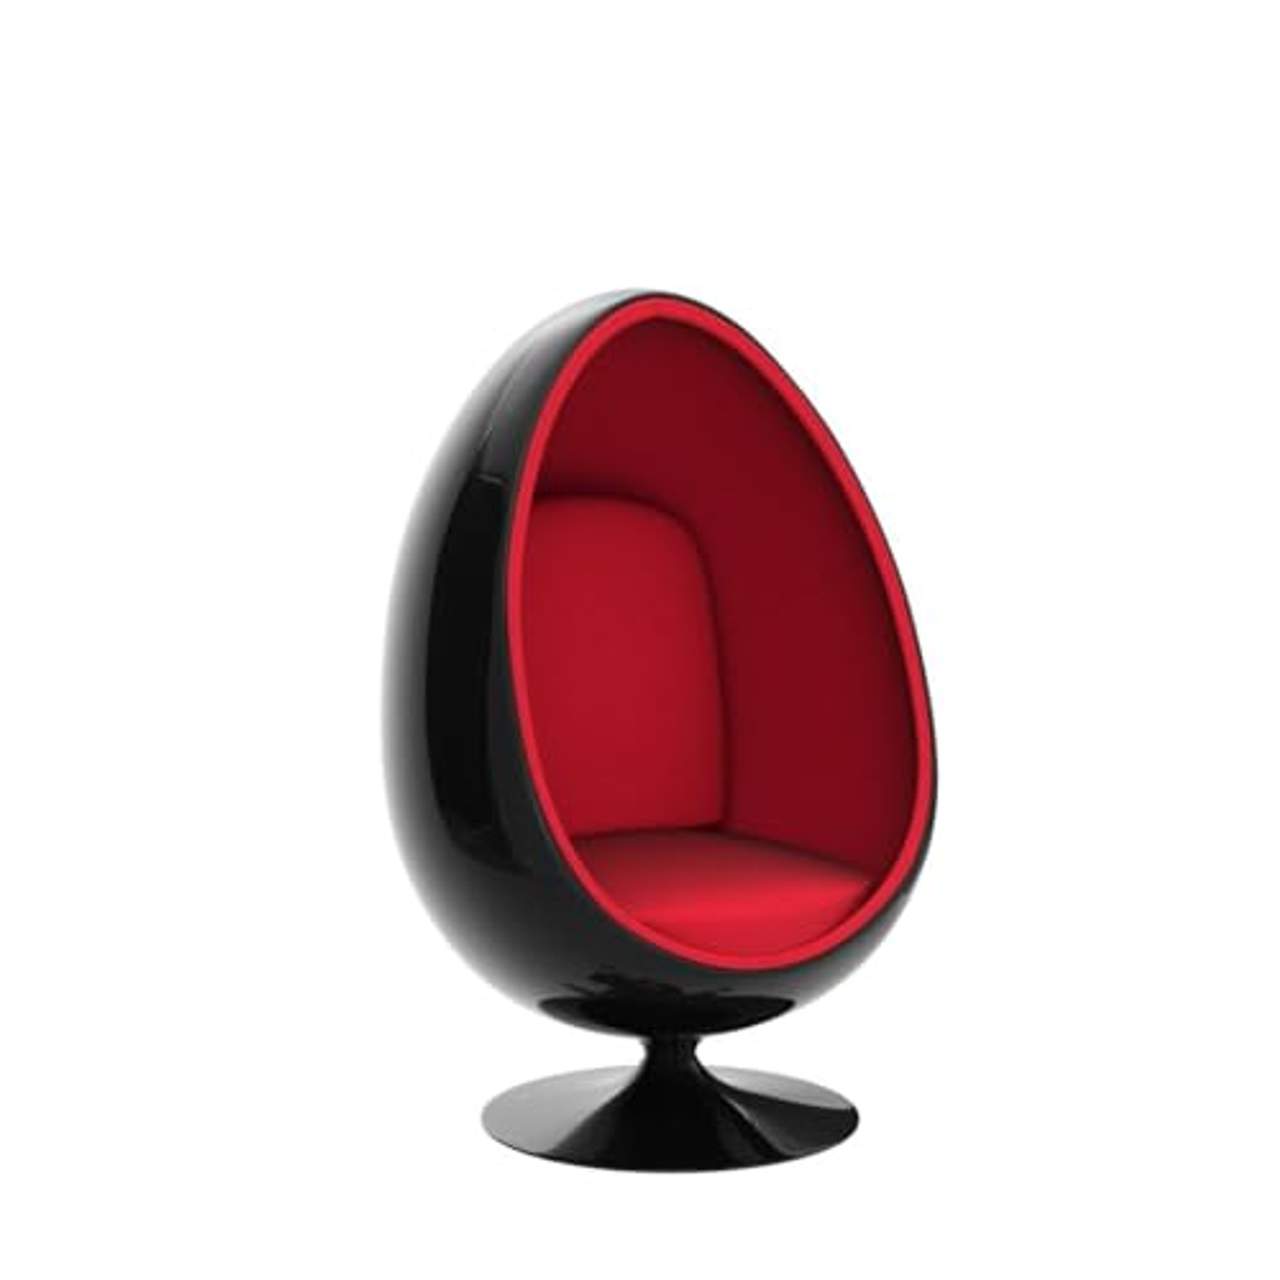 Design Retro Lounge Sessel Sitzei, EGG BALL